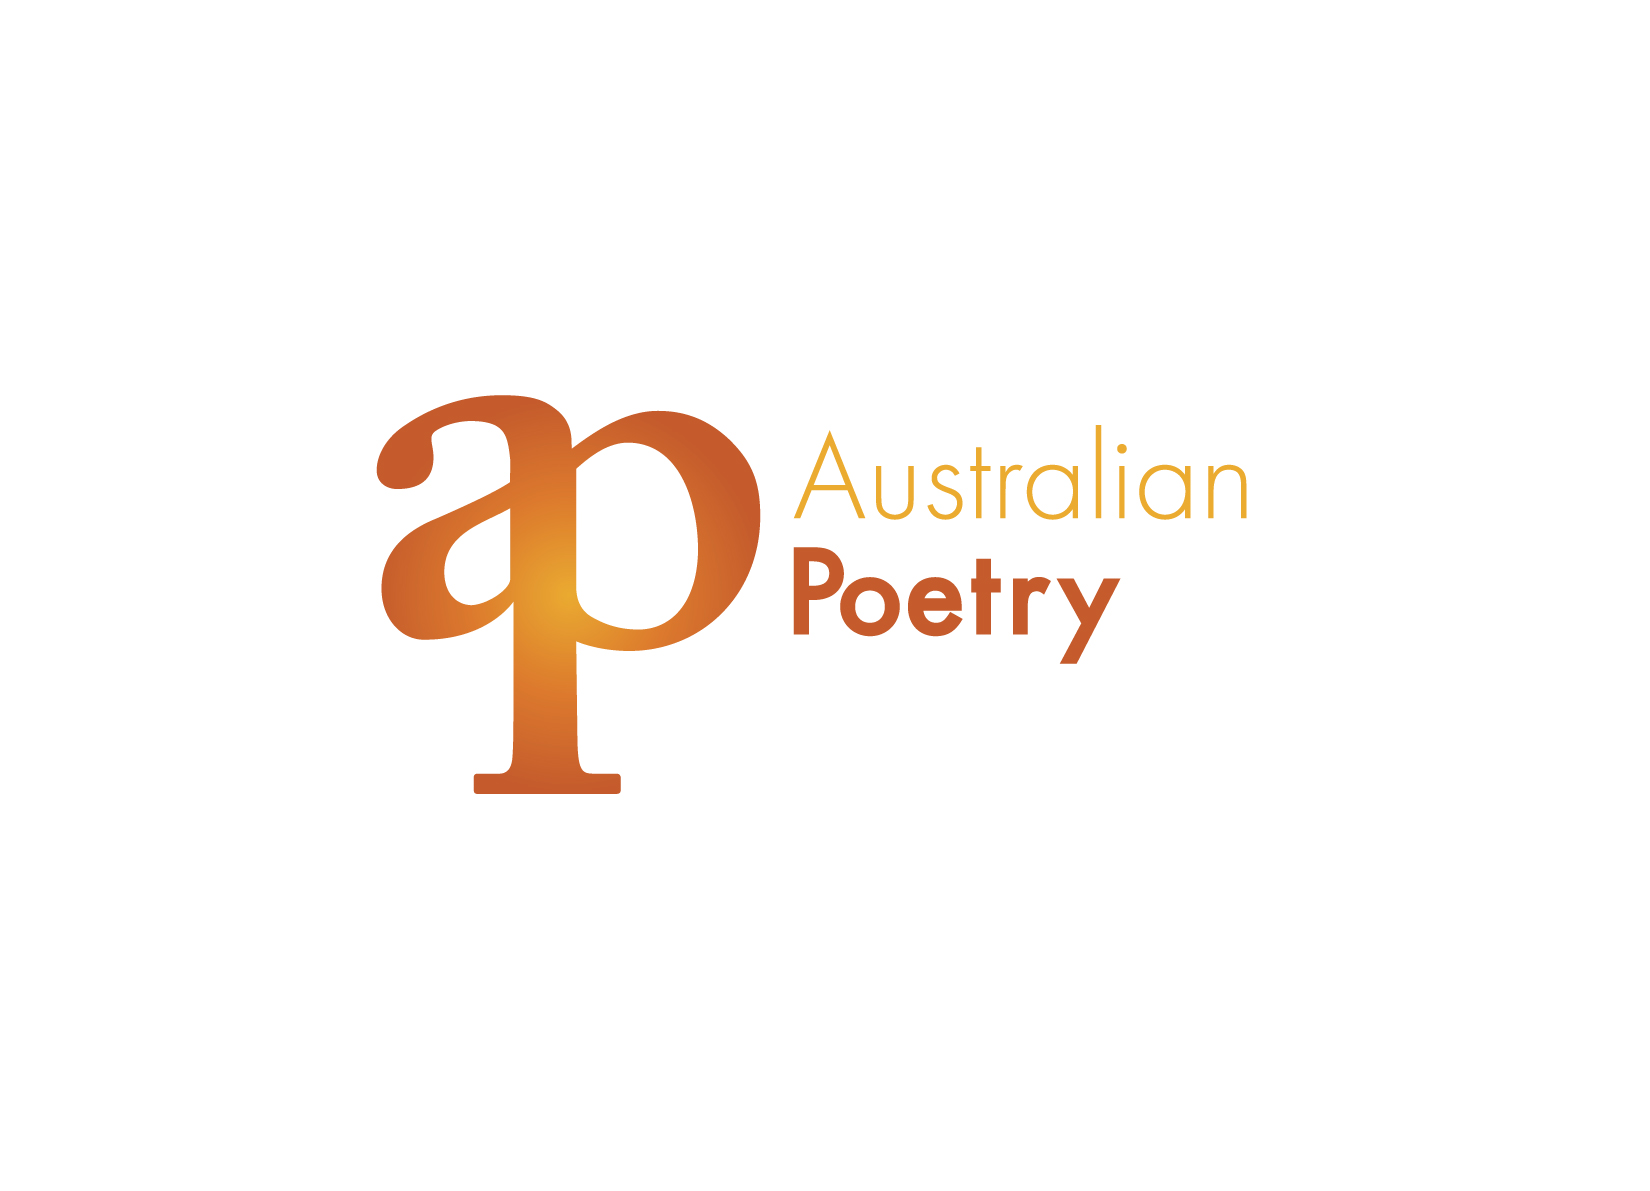 Australian-Poetry-vert-LOGO-orange-01.jpg